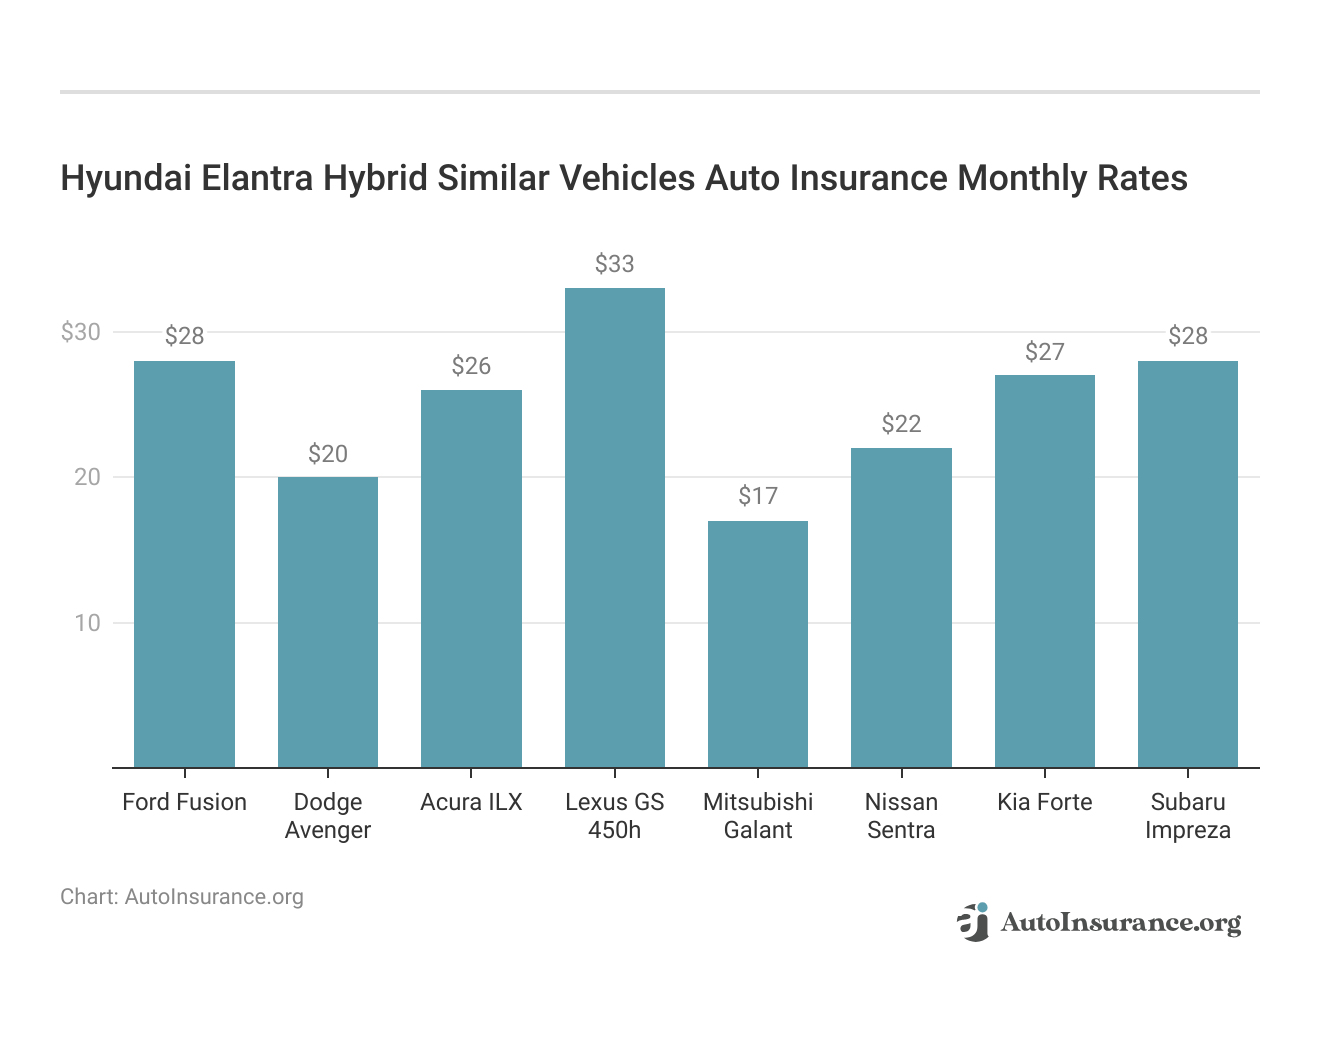 <h3>Hyundai Elantra Hybrid Similar Vehicles Auto Insurance Monthly Rates</h3>